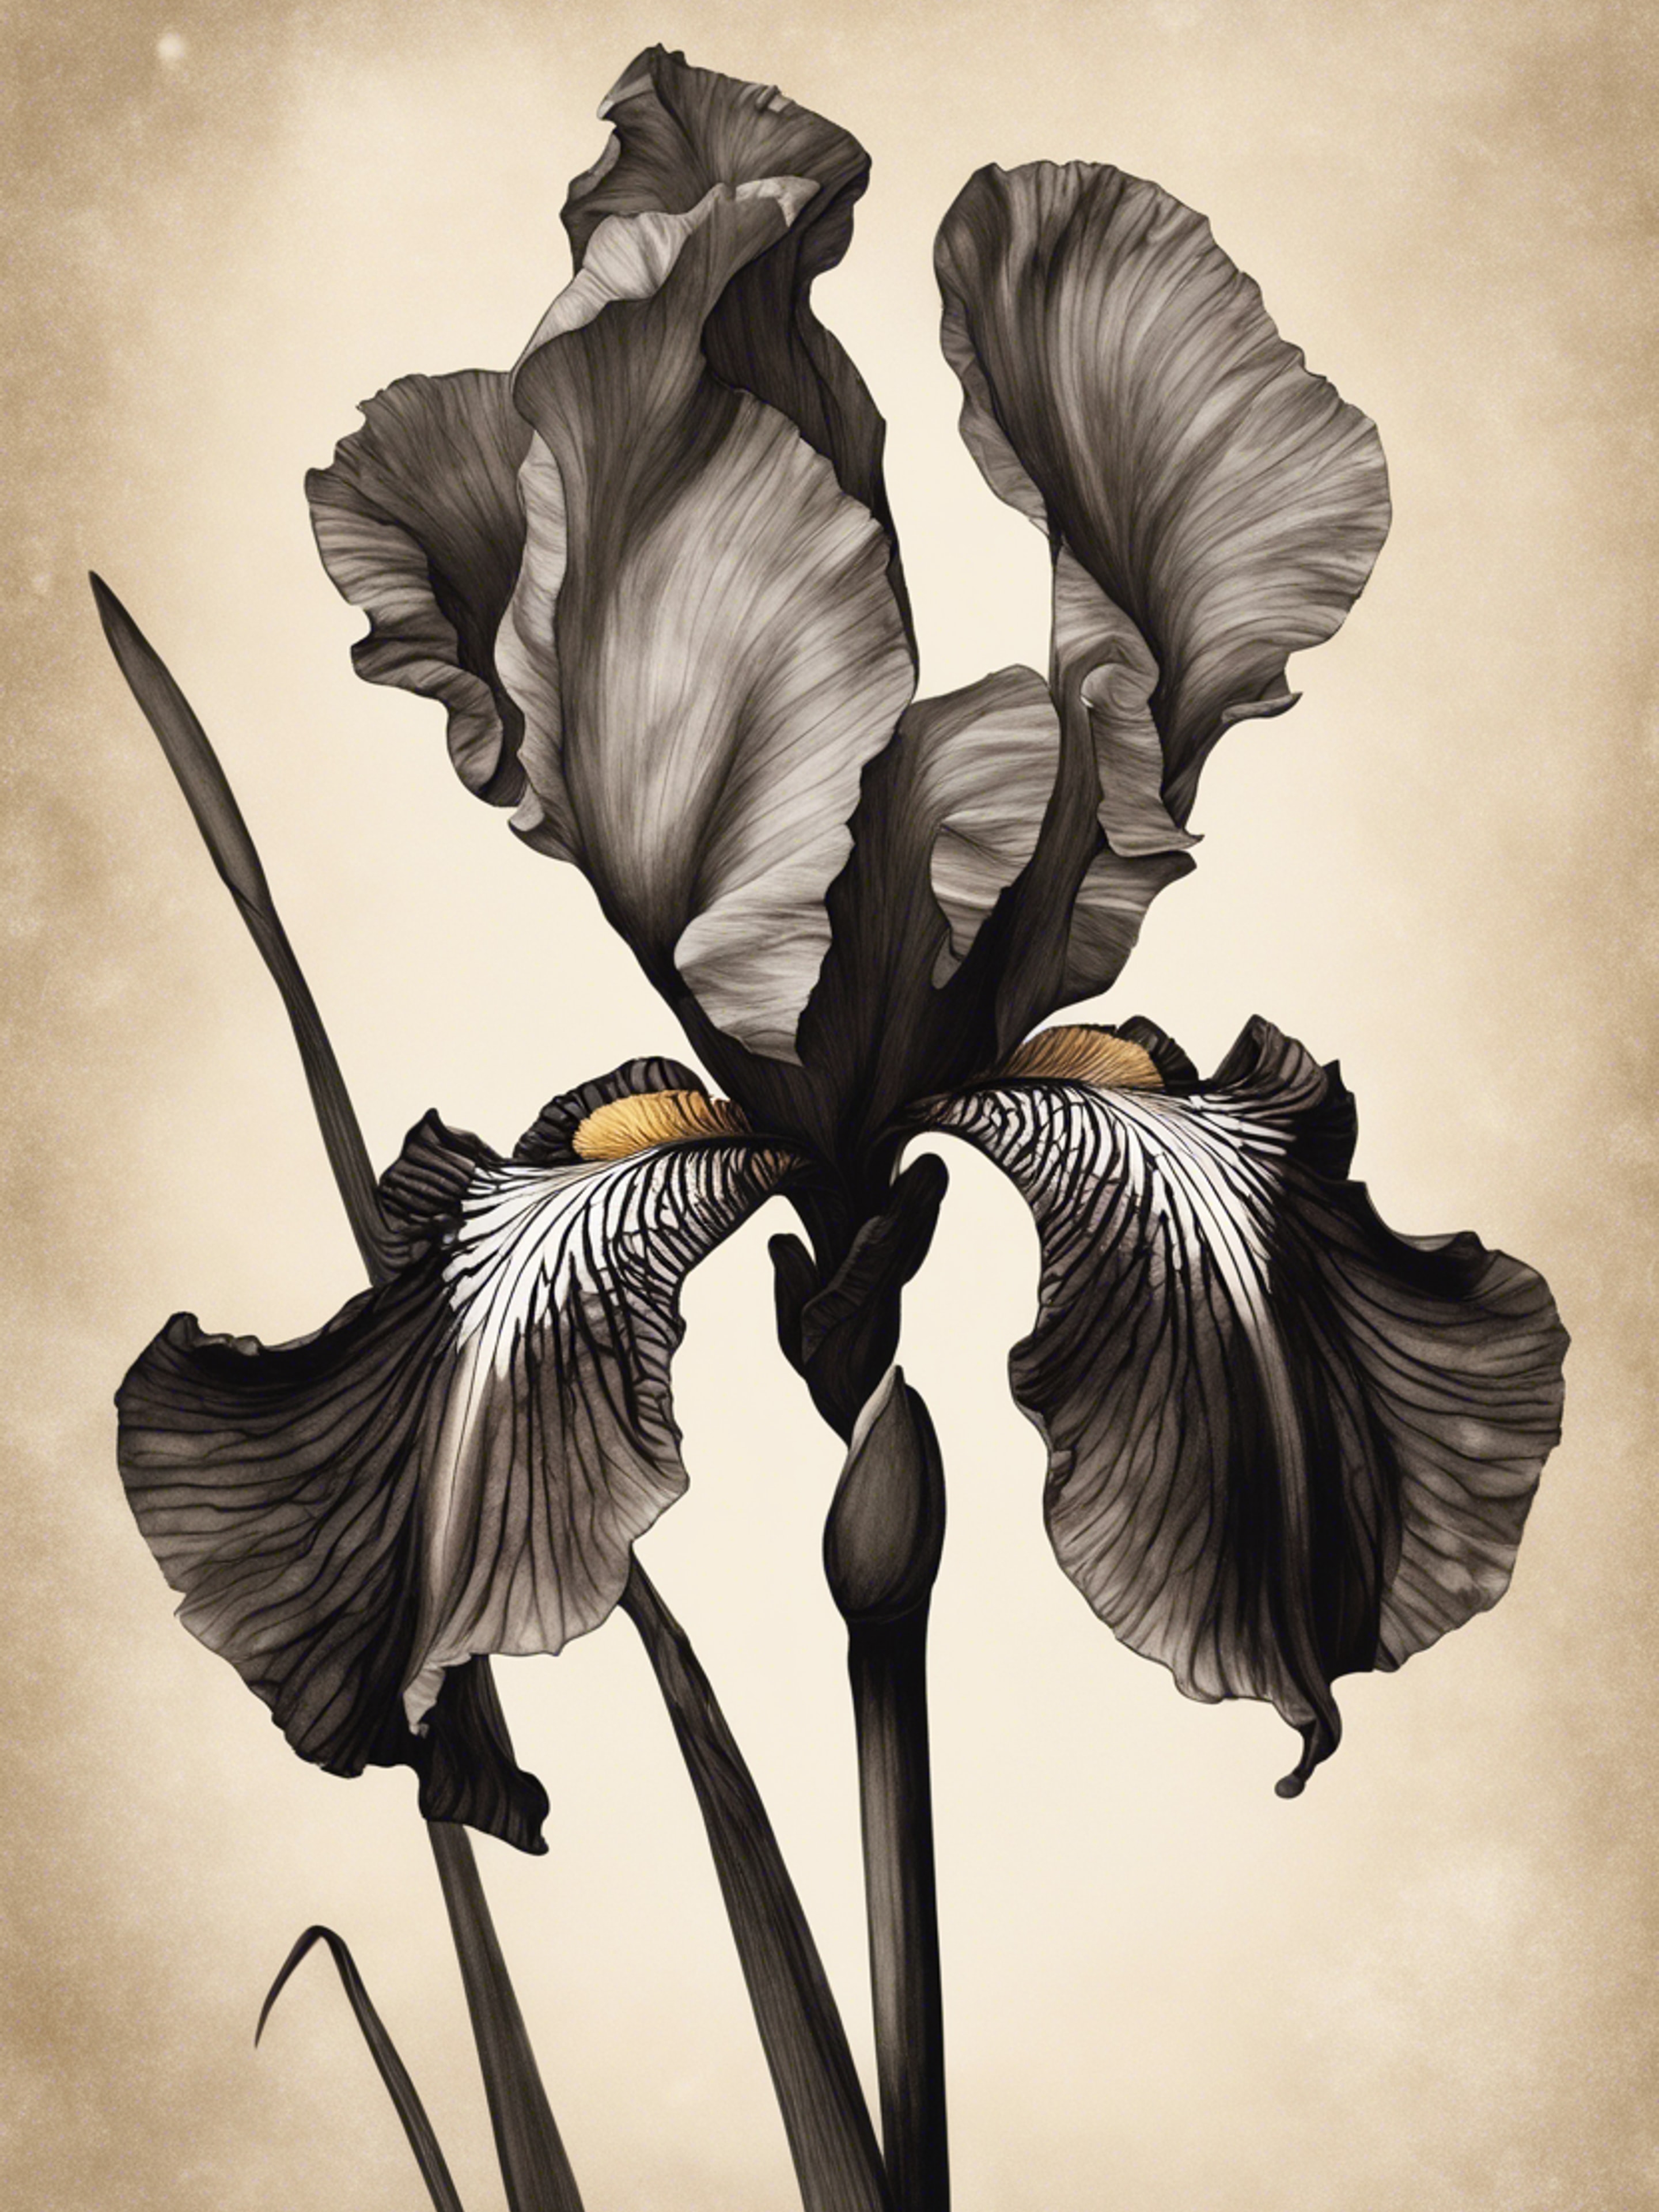 Vintage botanical illustration of a black iris with soft sepia tones. Divar kağızı[2a4bd6e157a74e759ffb]